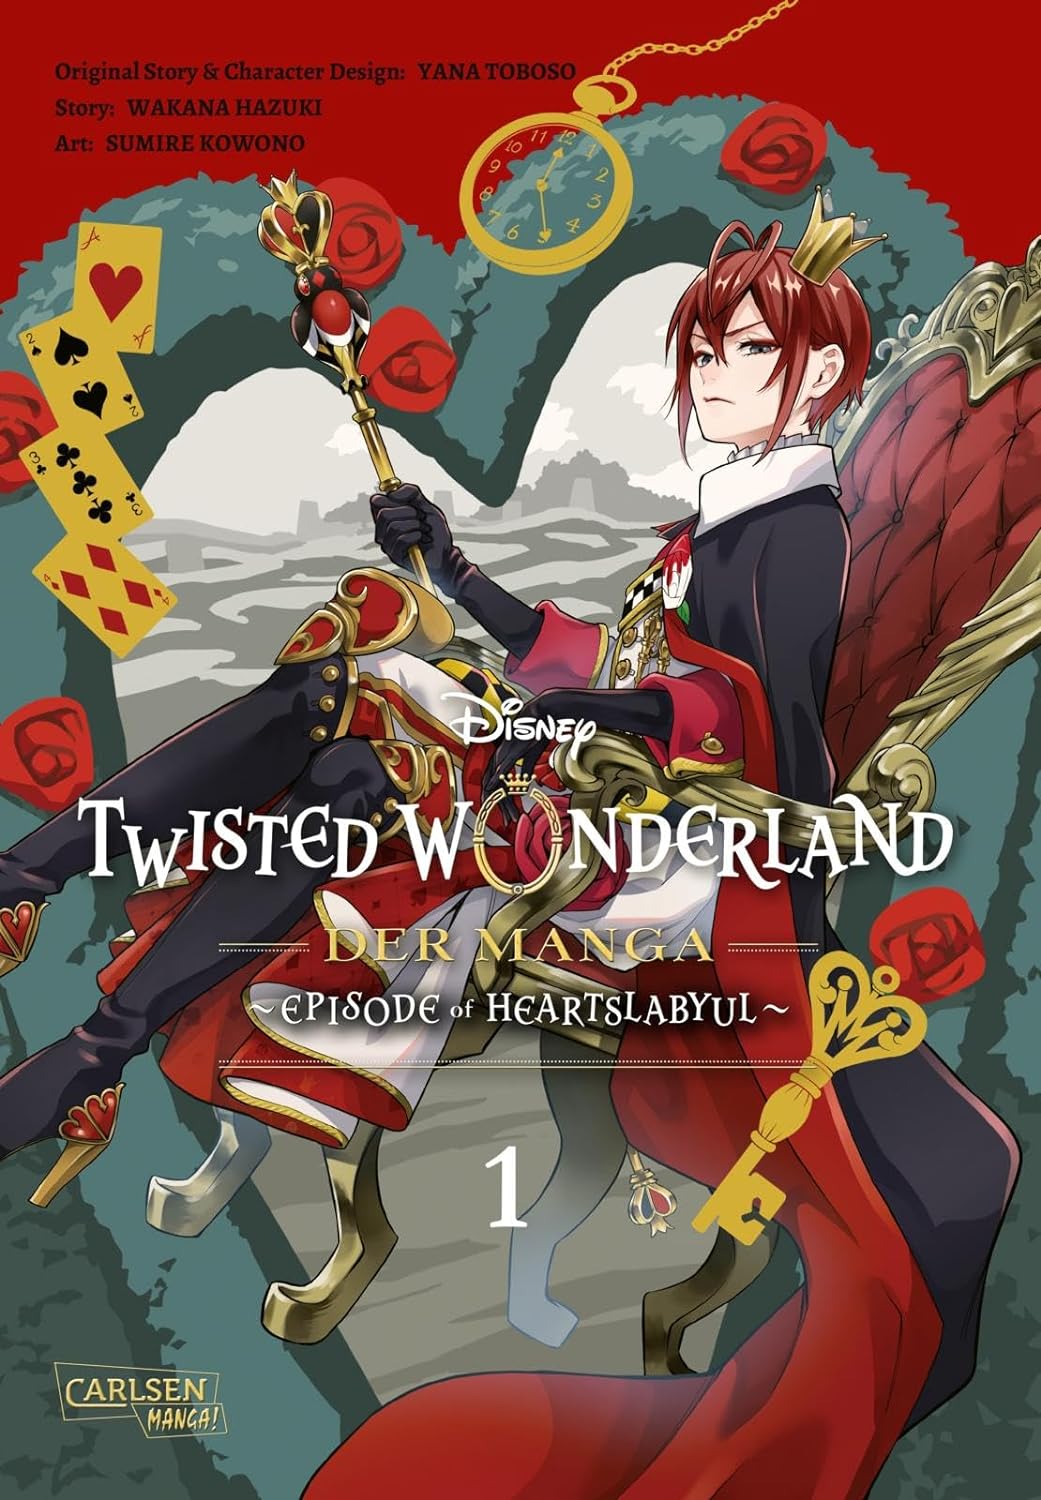 Episode of Heartslabyul Disney Twisted Wonderland 